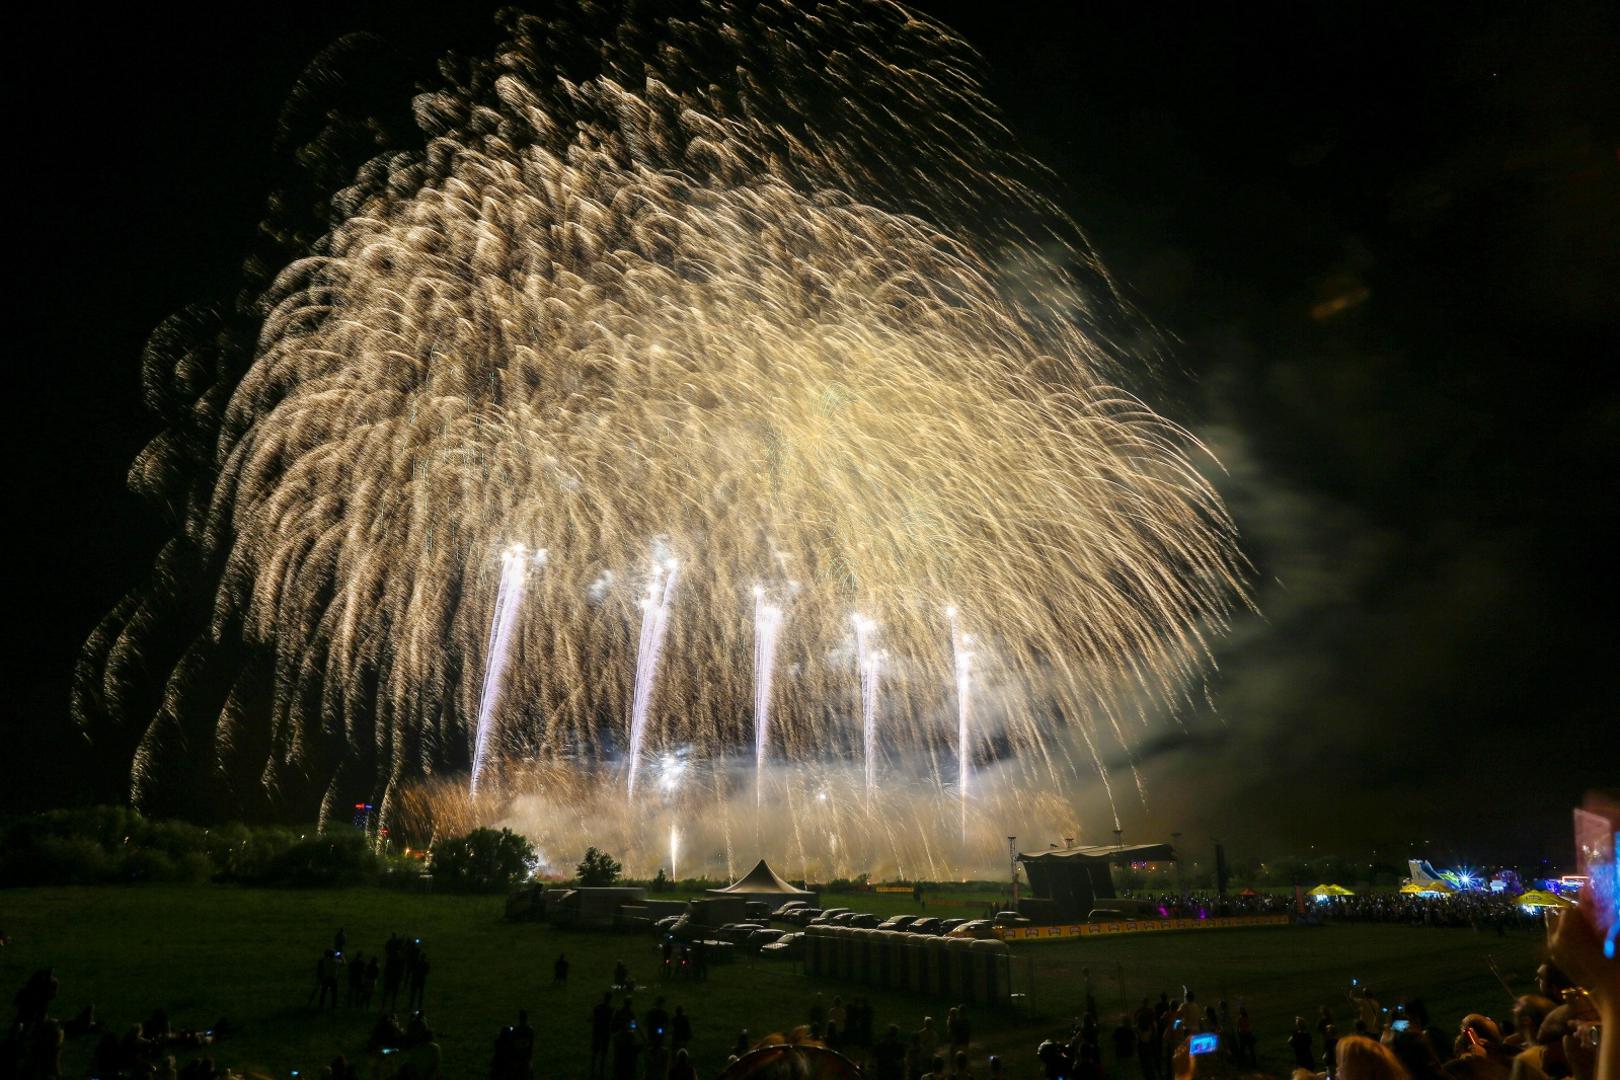 Završio je 19. Međunarodni festival vatrometa koji se održao uz Savu od 14. do 17. lipnja.